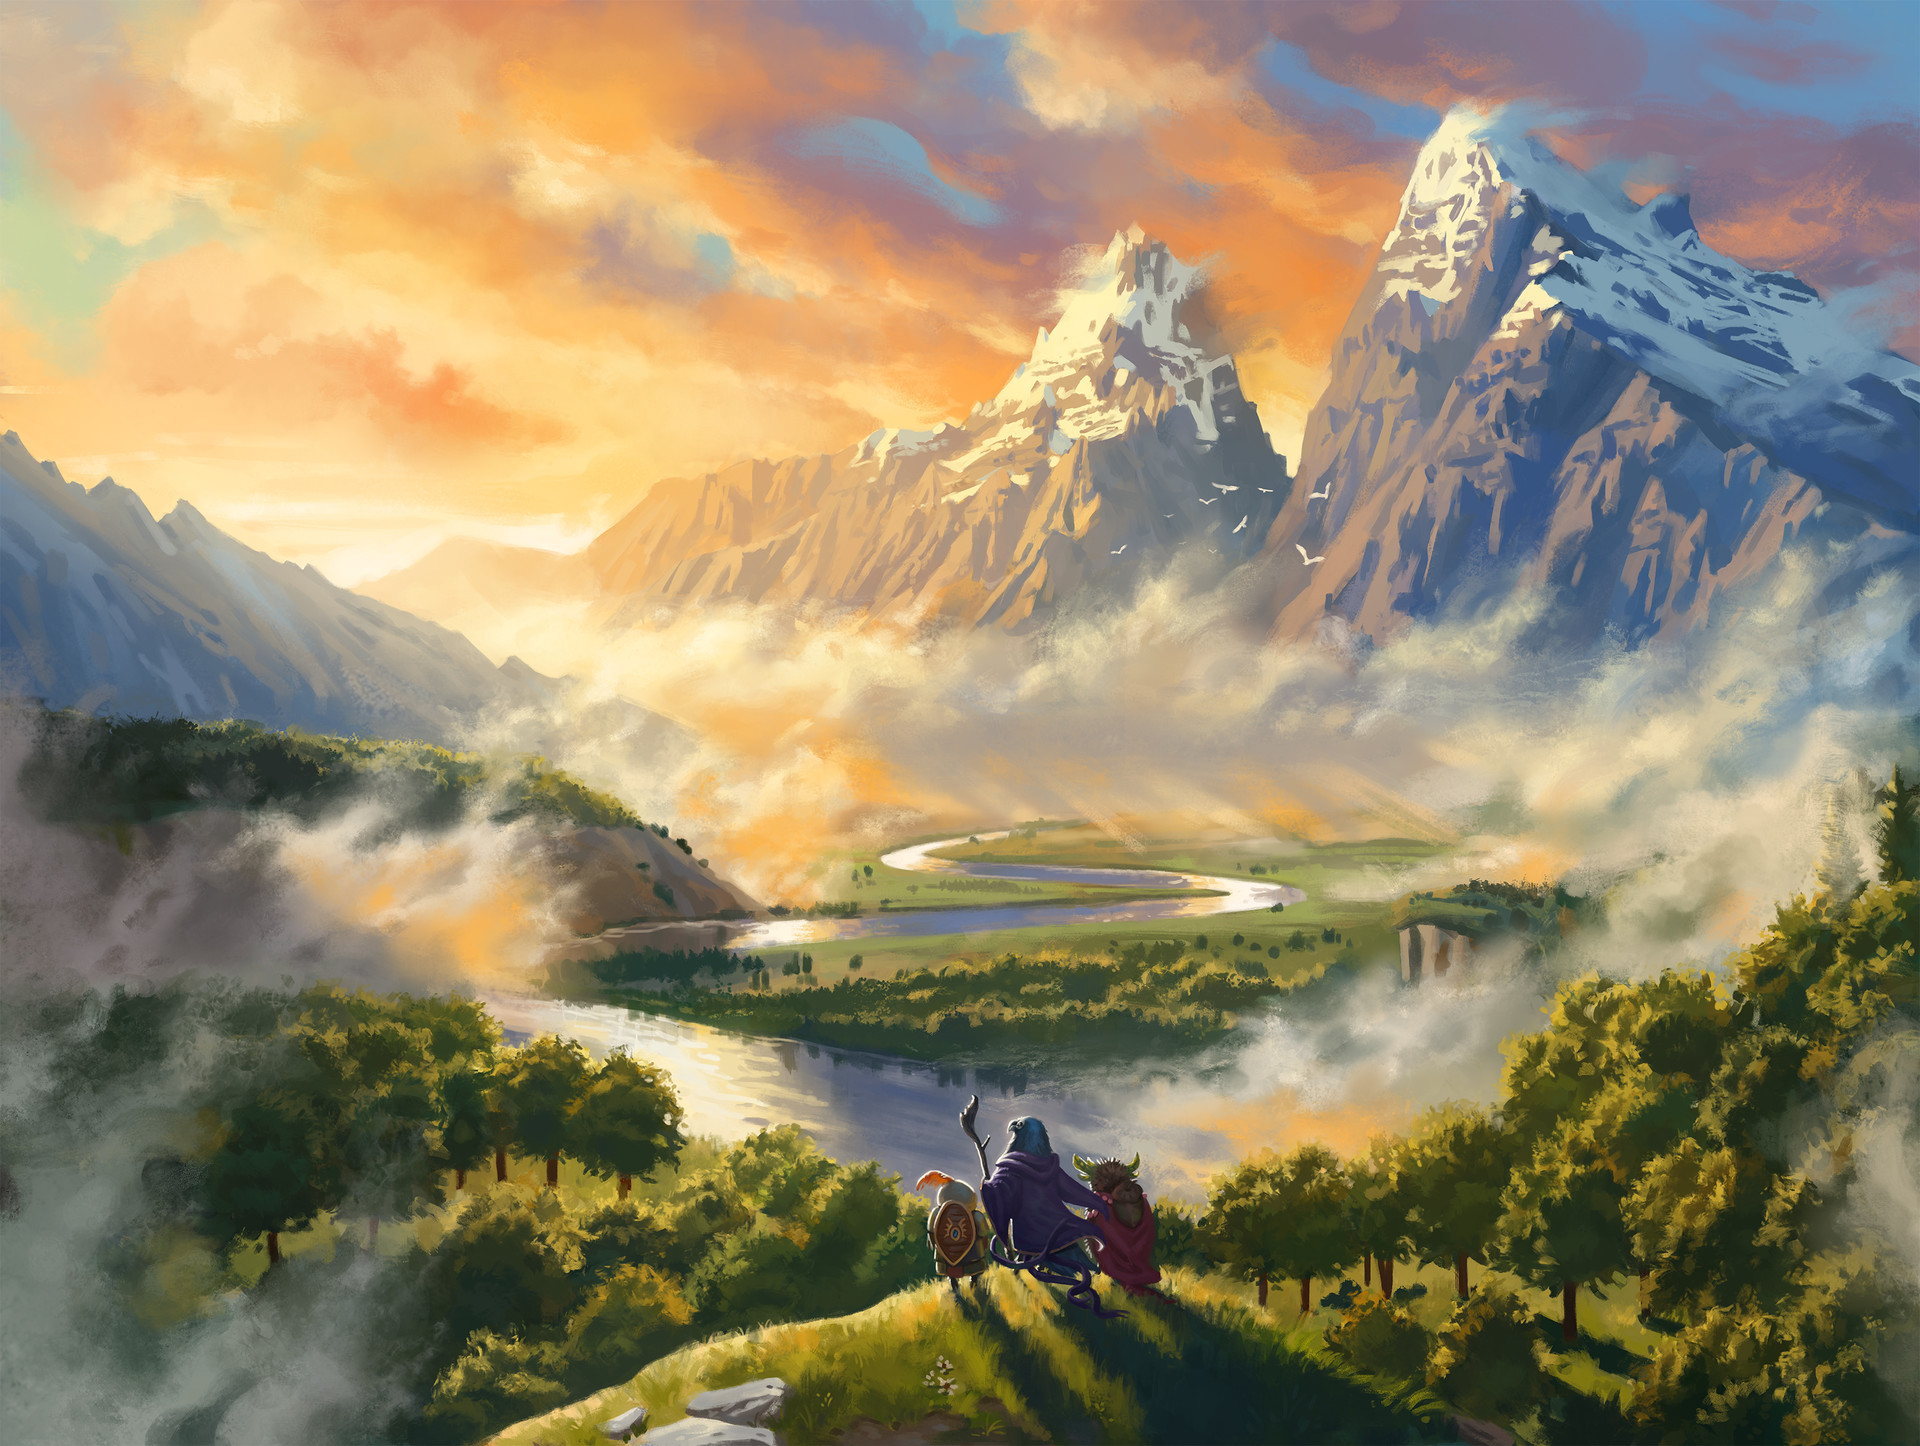 General 1920x1446 landscape fantasy art artwork illustration digital art mountains clouds forest